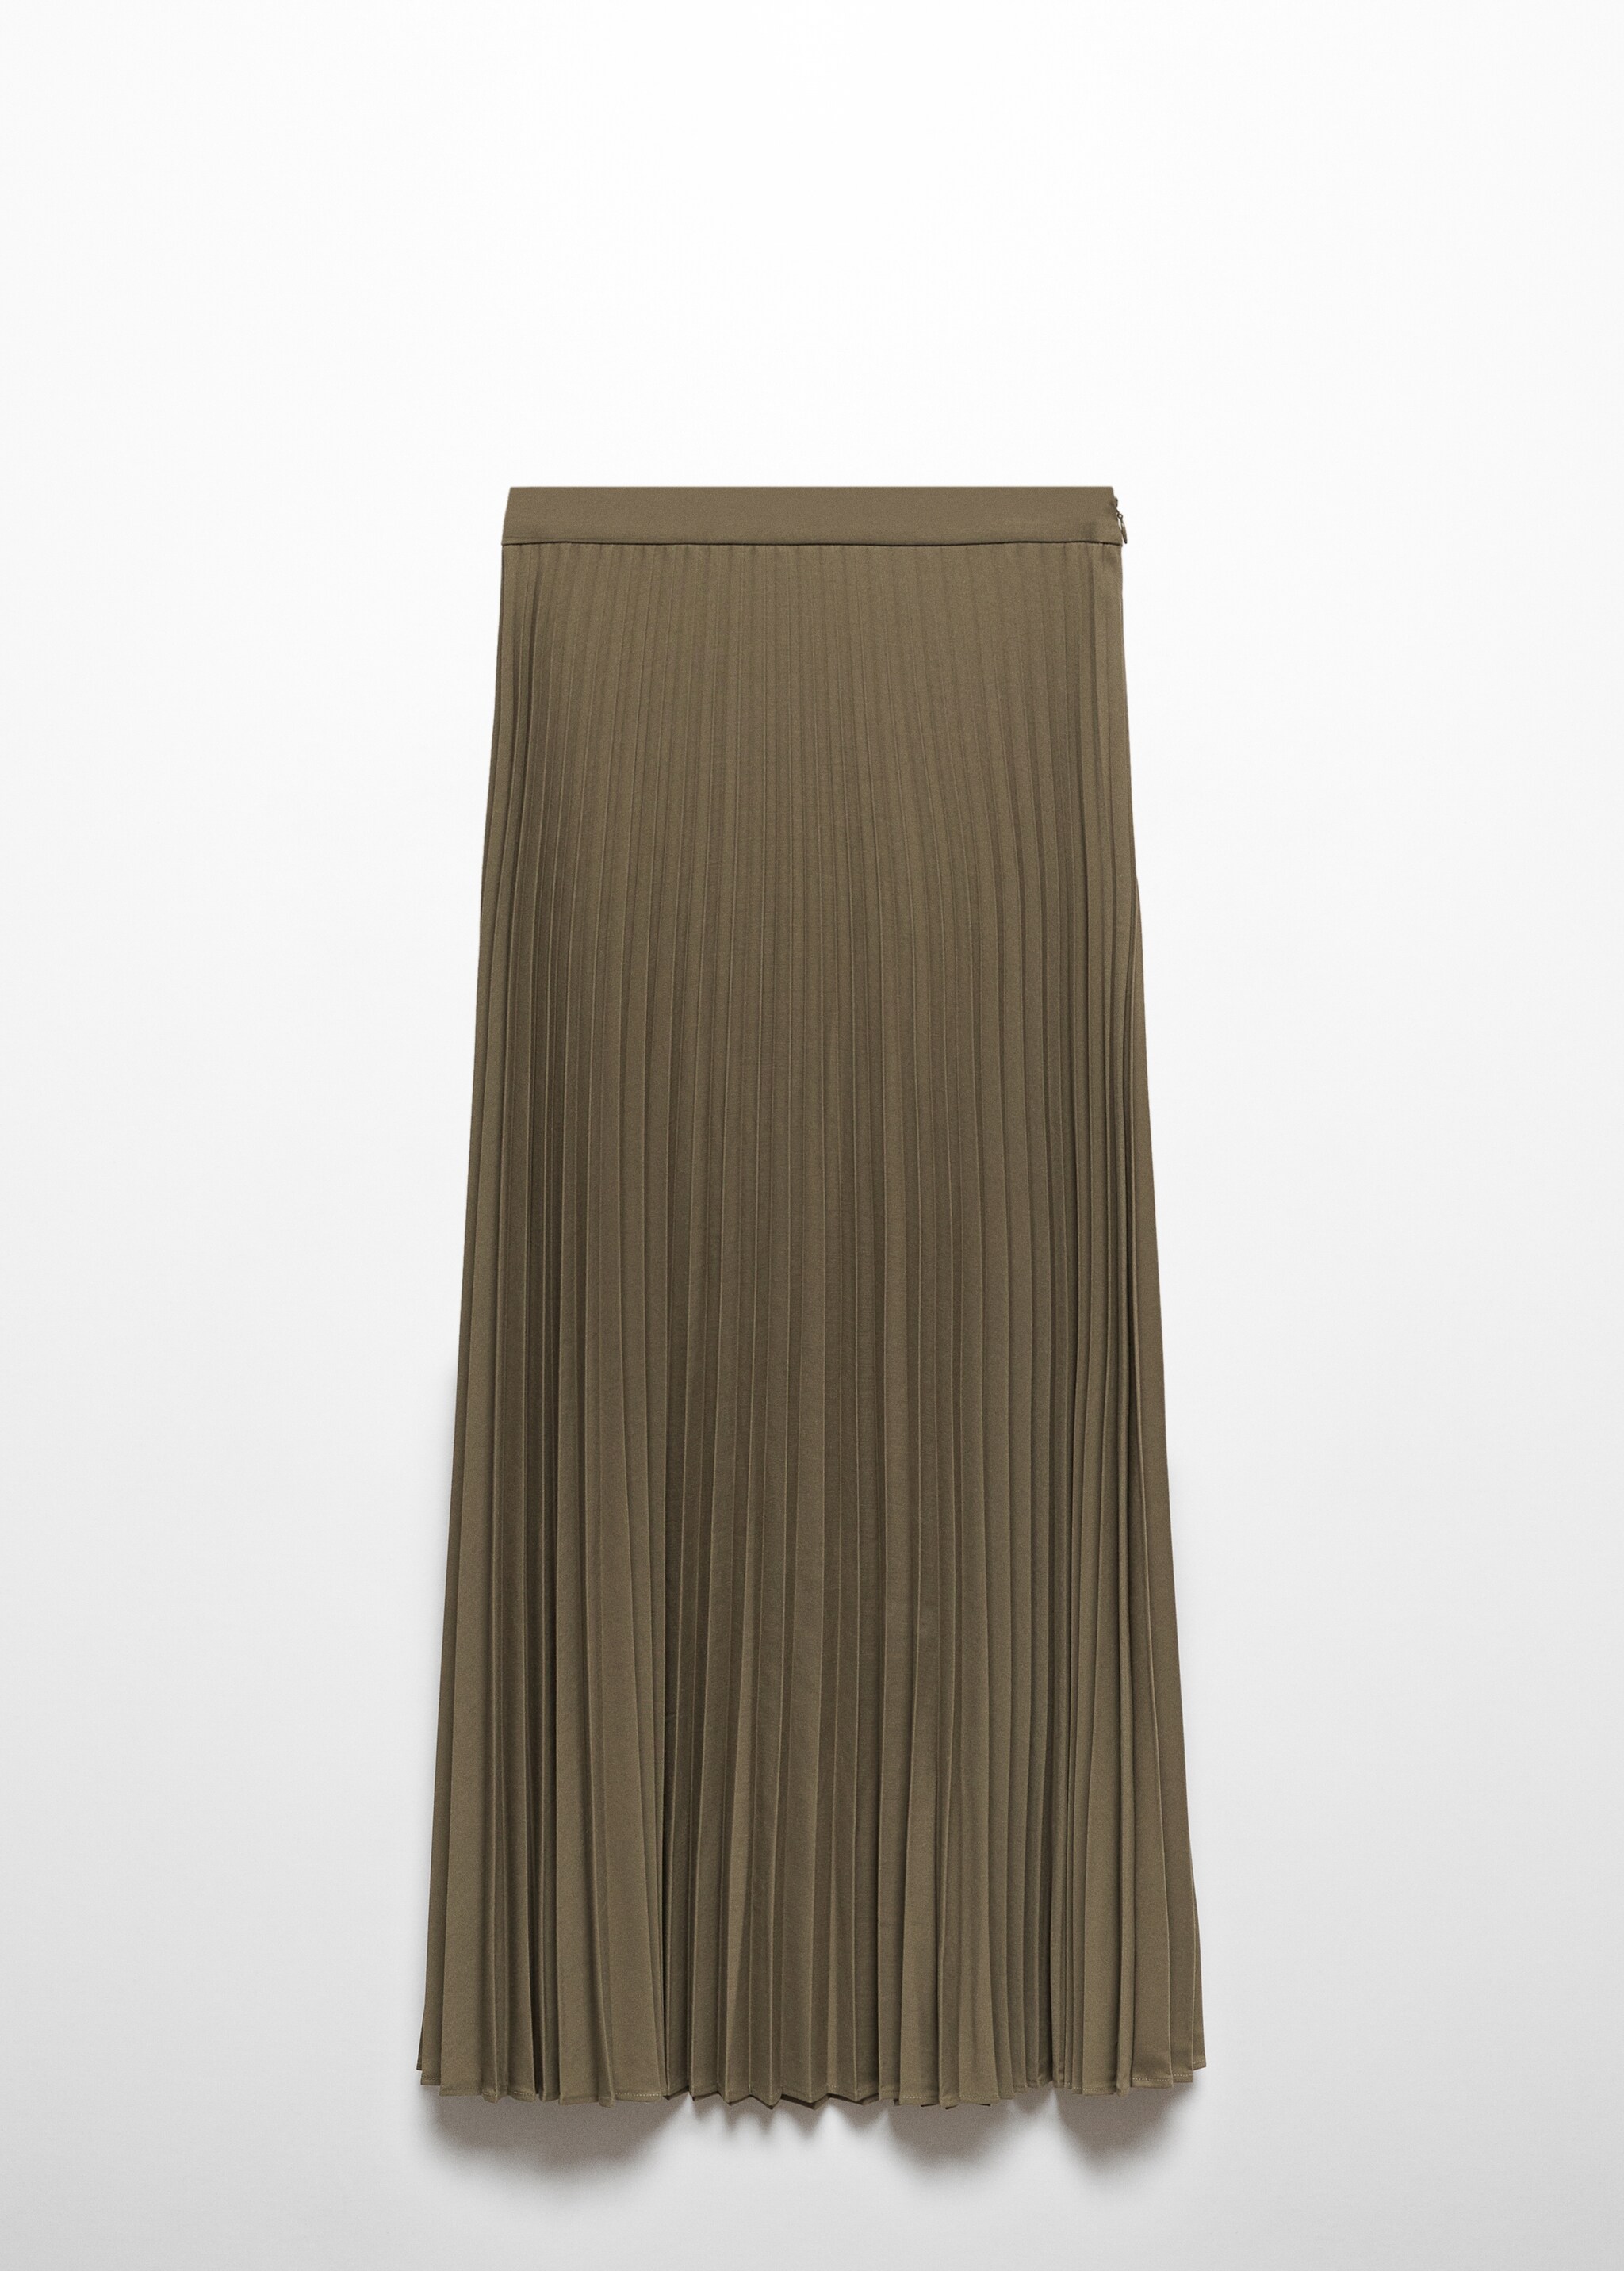 Длинная плиссированная юбка - Изделие без модели